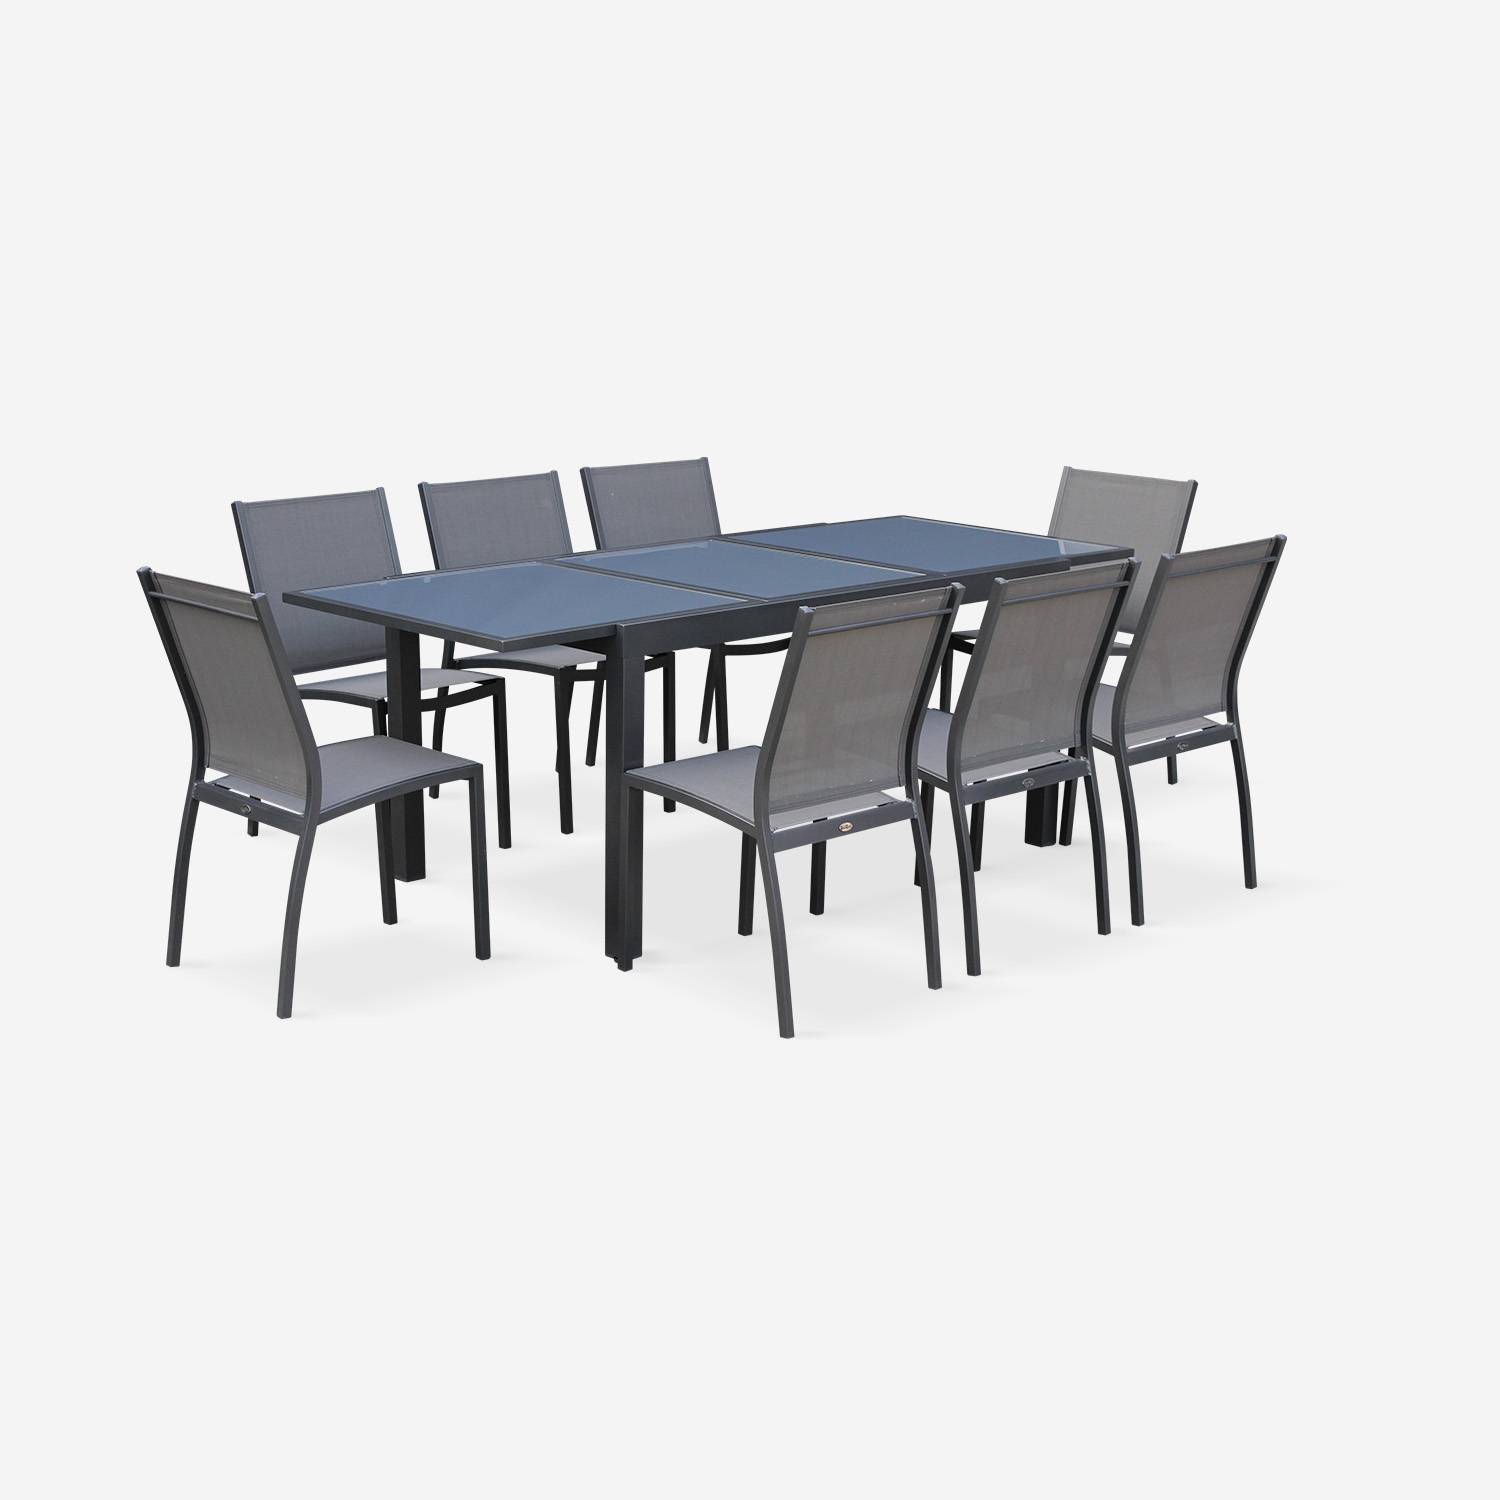 Coppia di sedie Orlando Antracite/ Grigio scuro | In alluminio antracite e textilene colore grigio scuro, impilabili Photo4